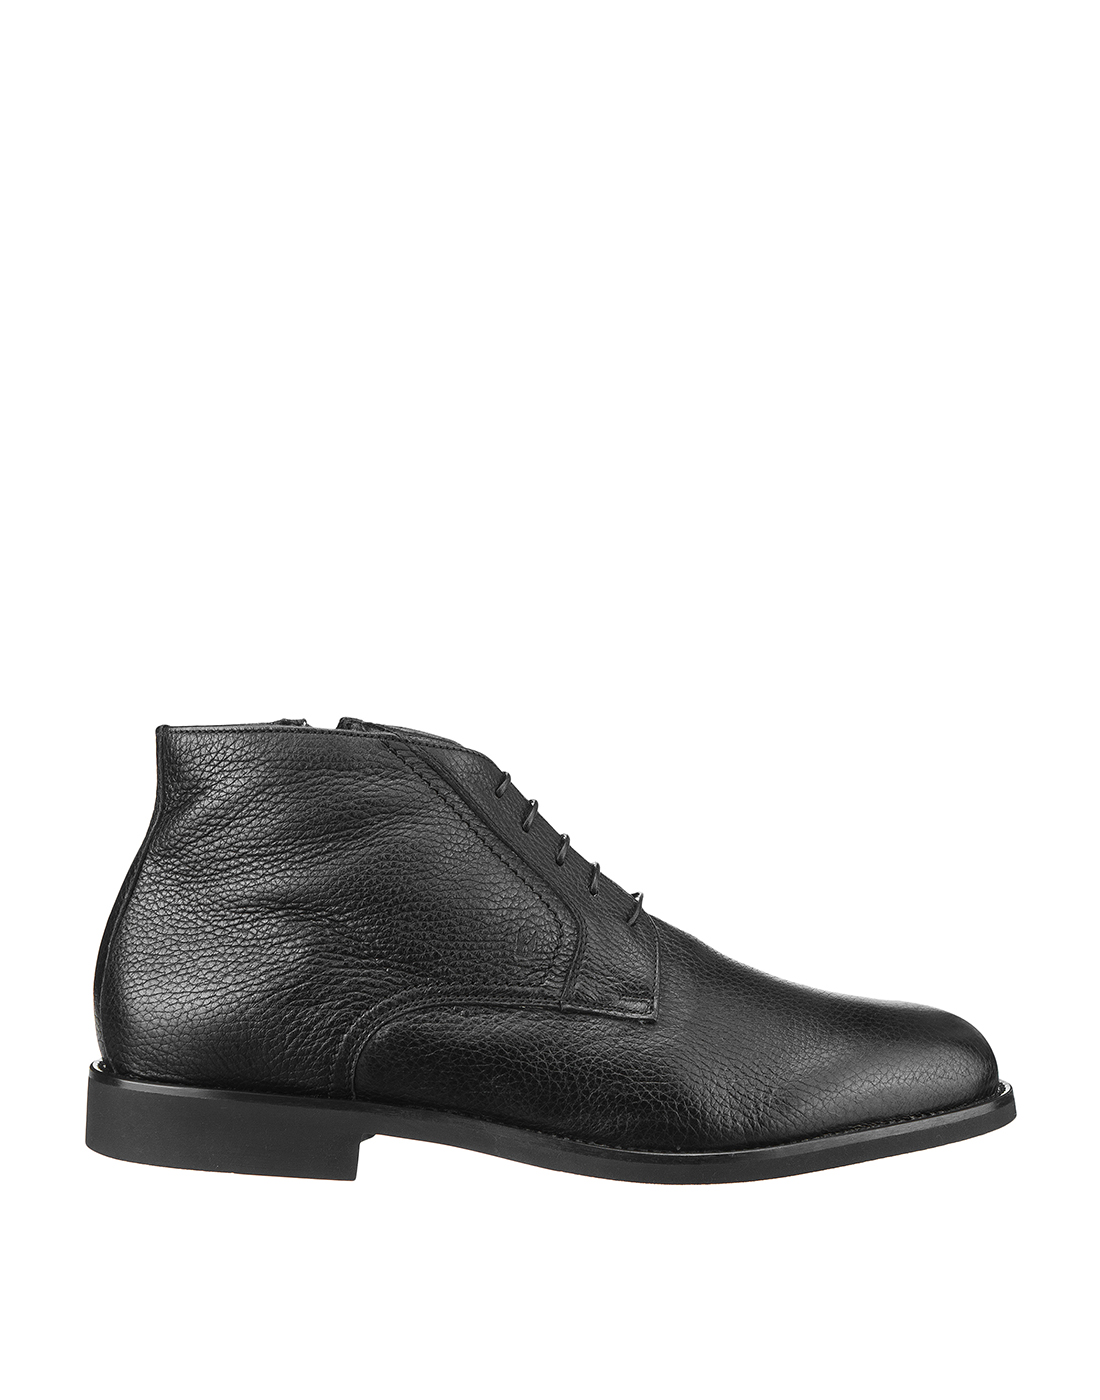 Ботинки черные мужские Moreschi S43236-1